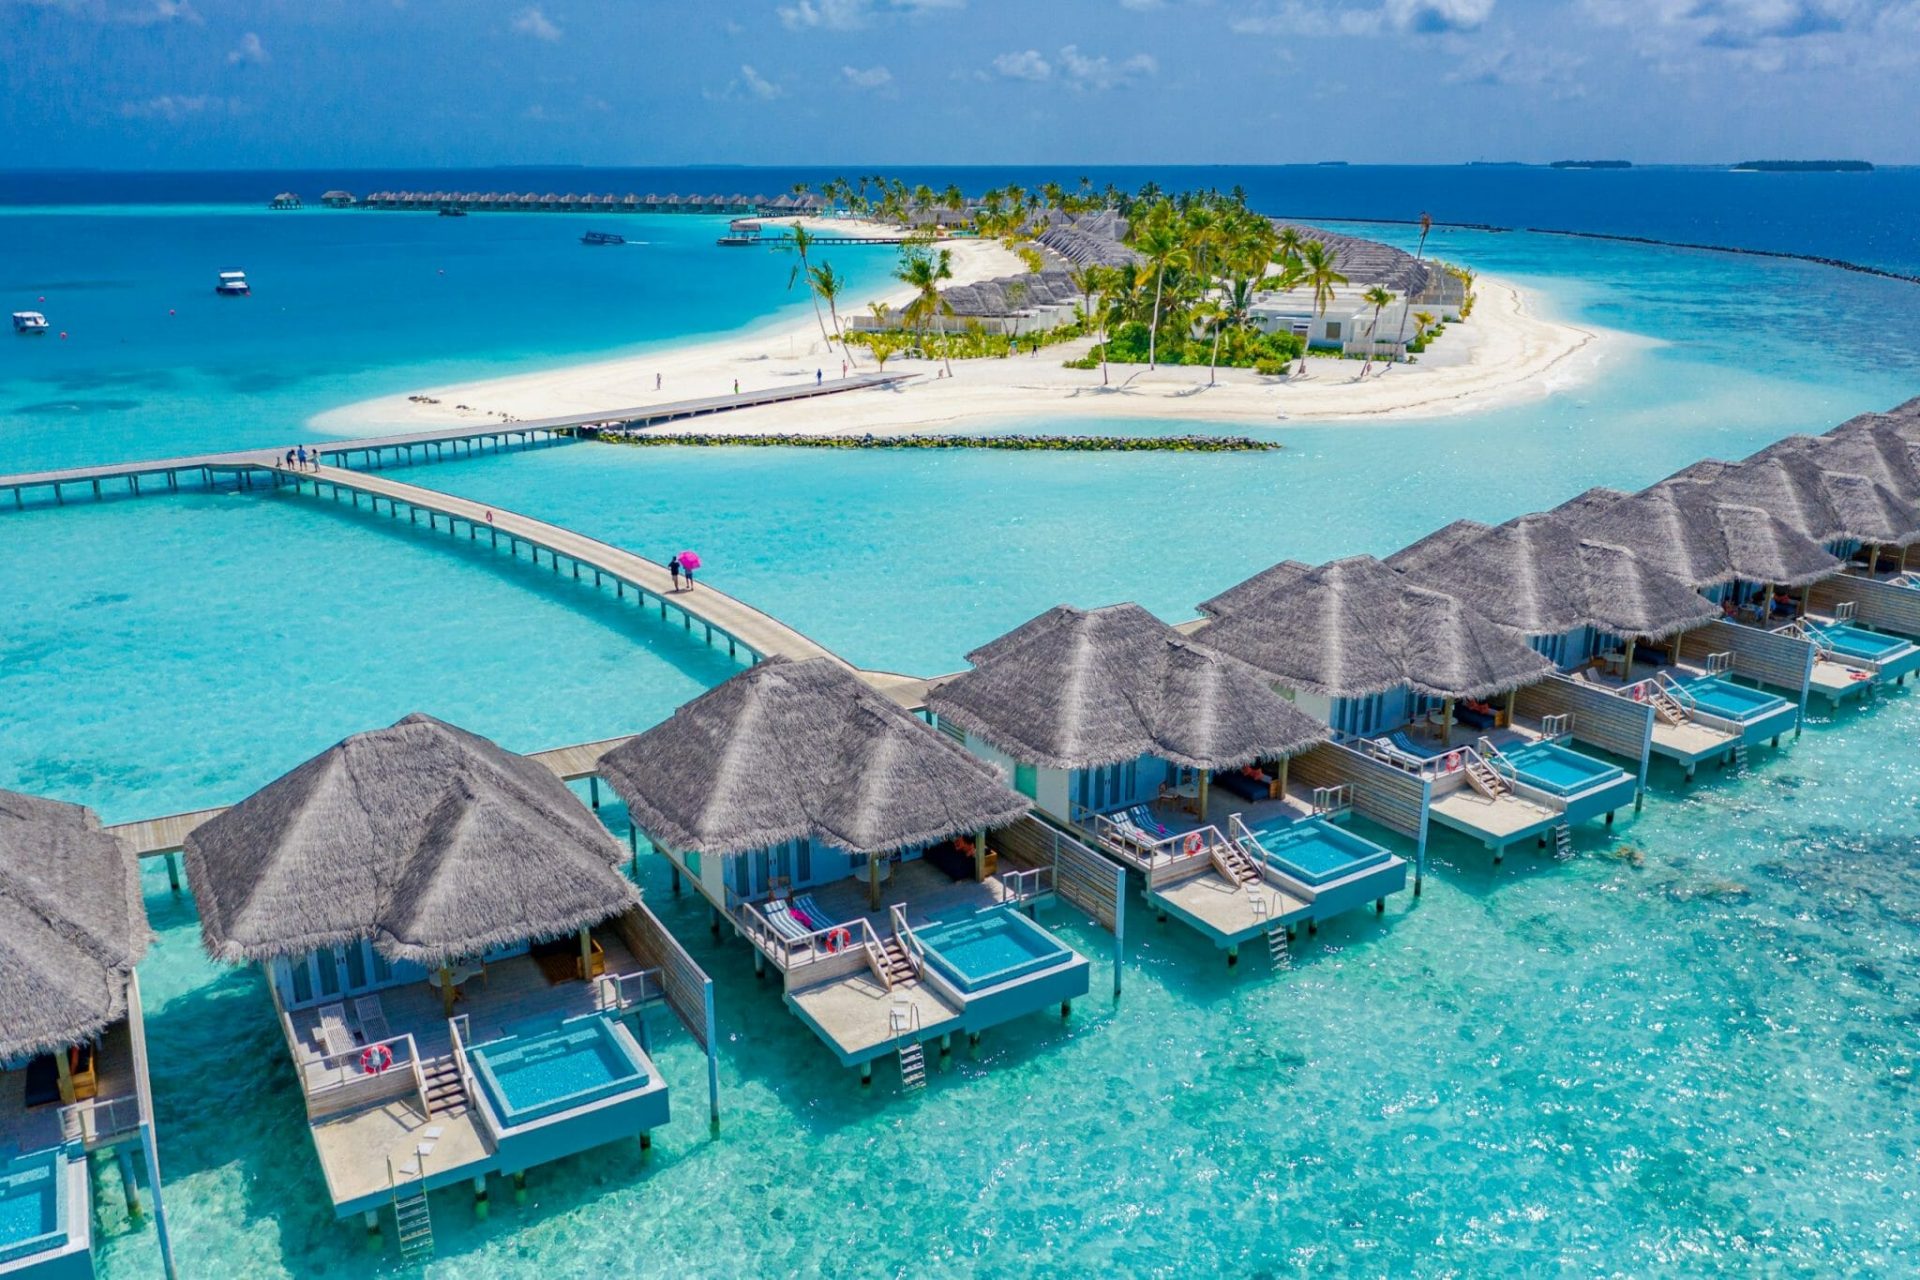 Wasservillen auf den Malediven, im Hintergrund sandfarbene Insel mit Palmen und türkisfarbenes Meer